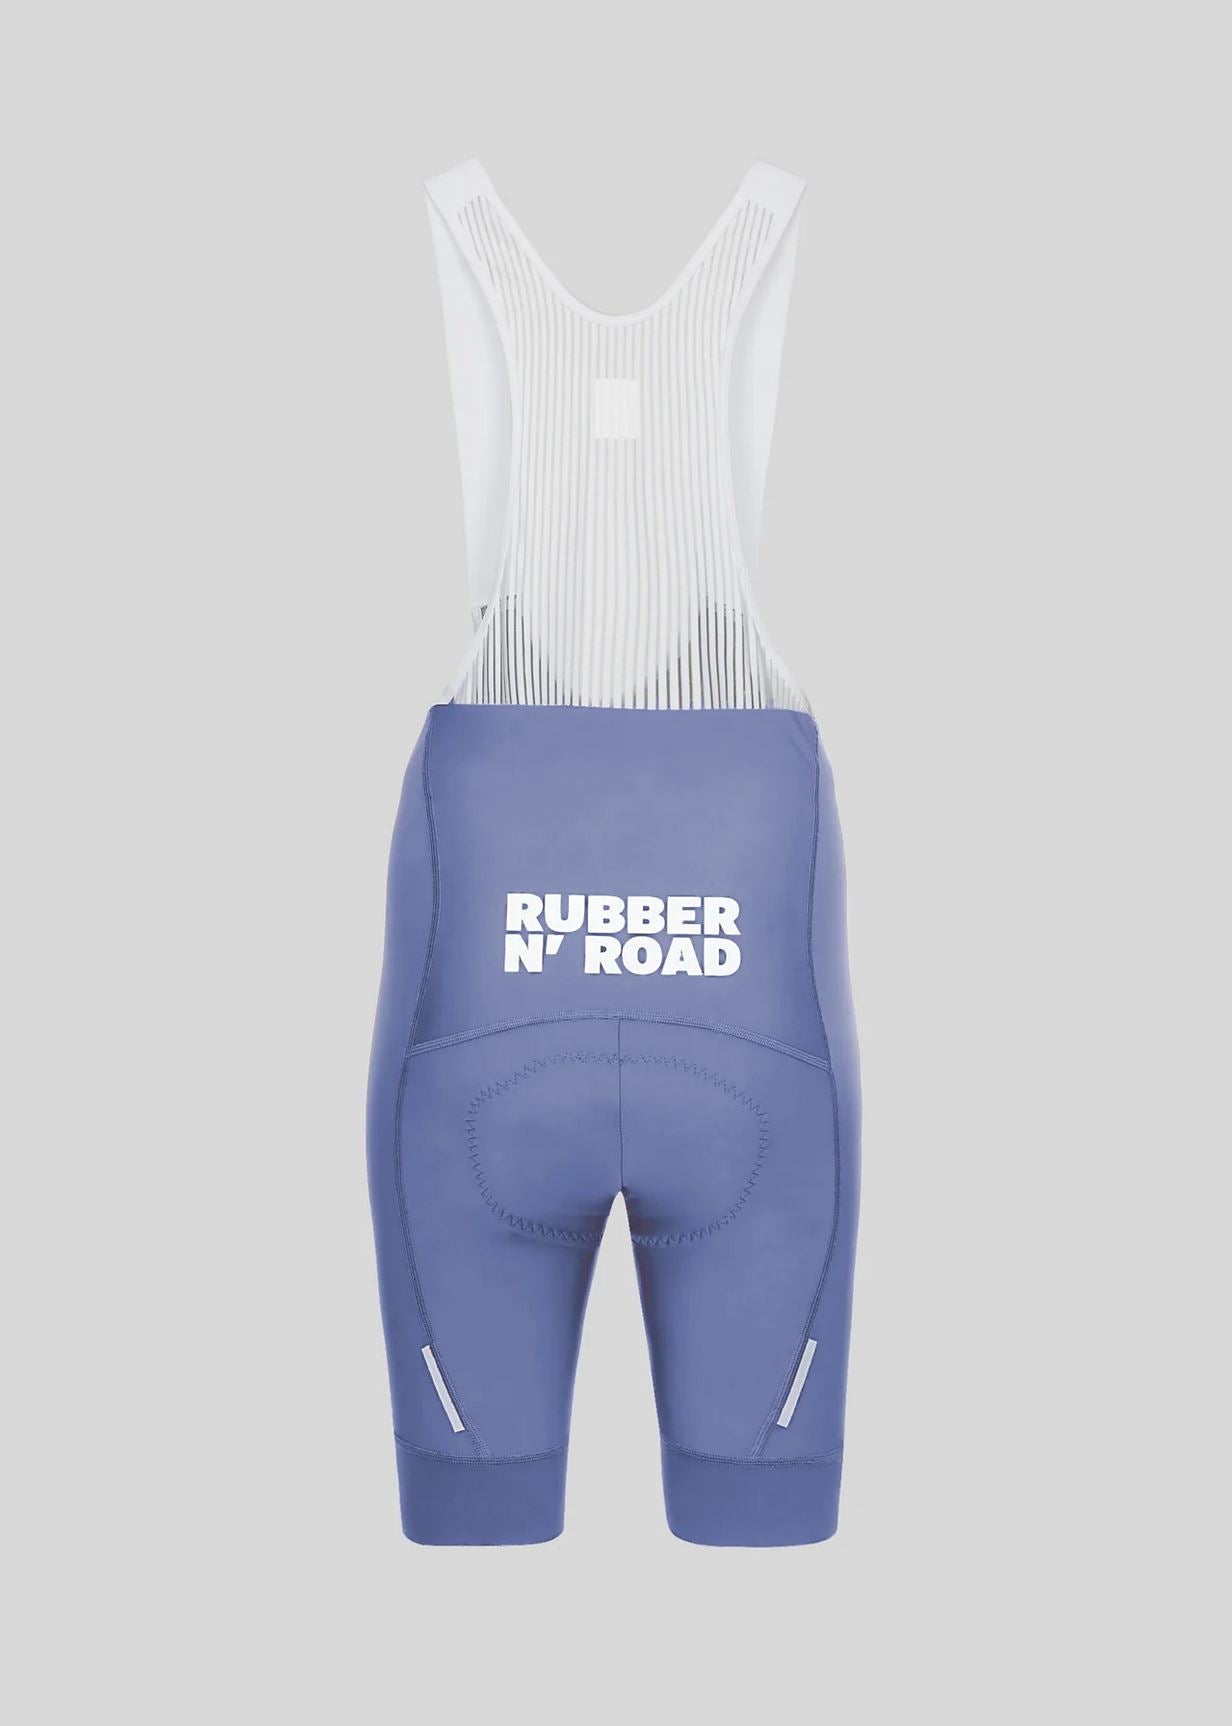 Rubber N' Road - Bib Uniform Femme Bibs Rubber N' Road 